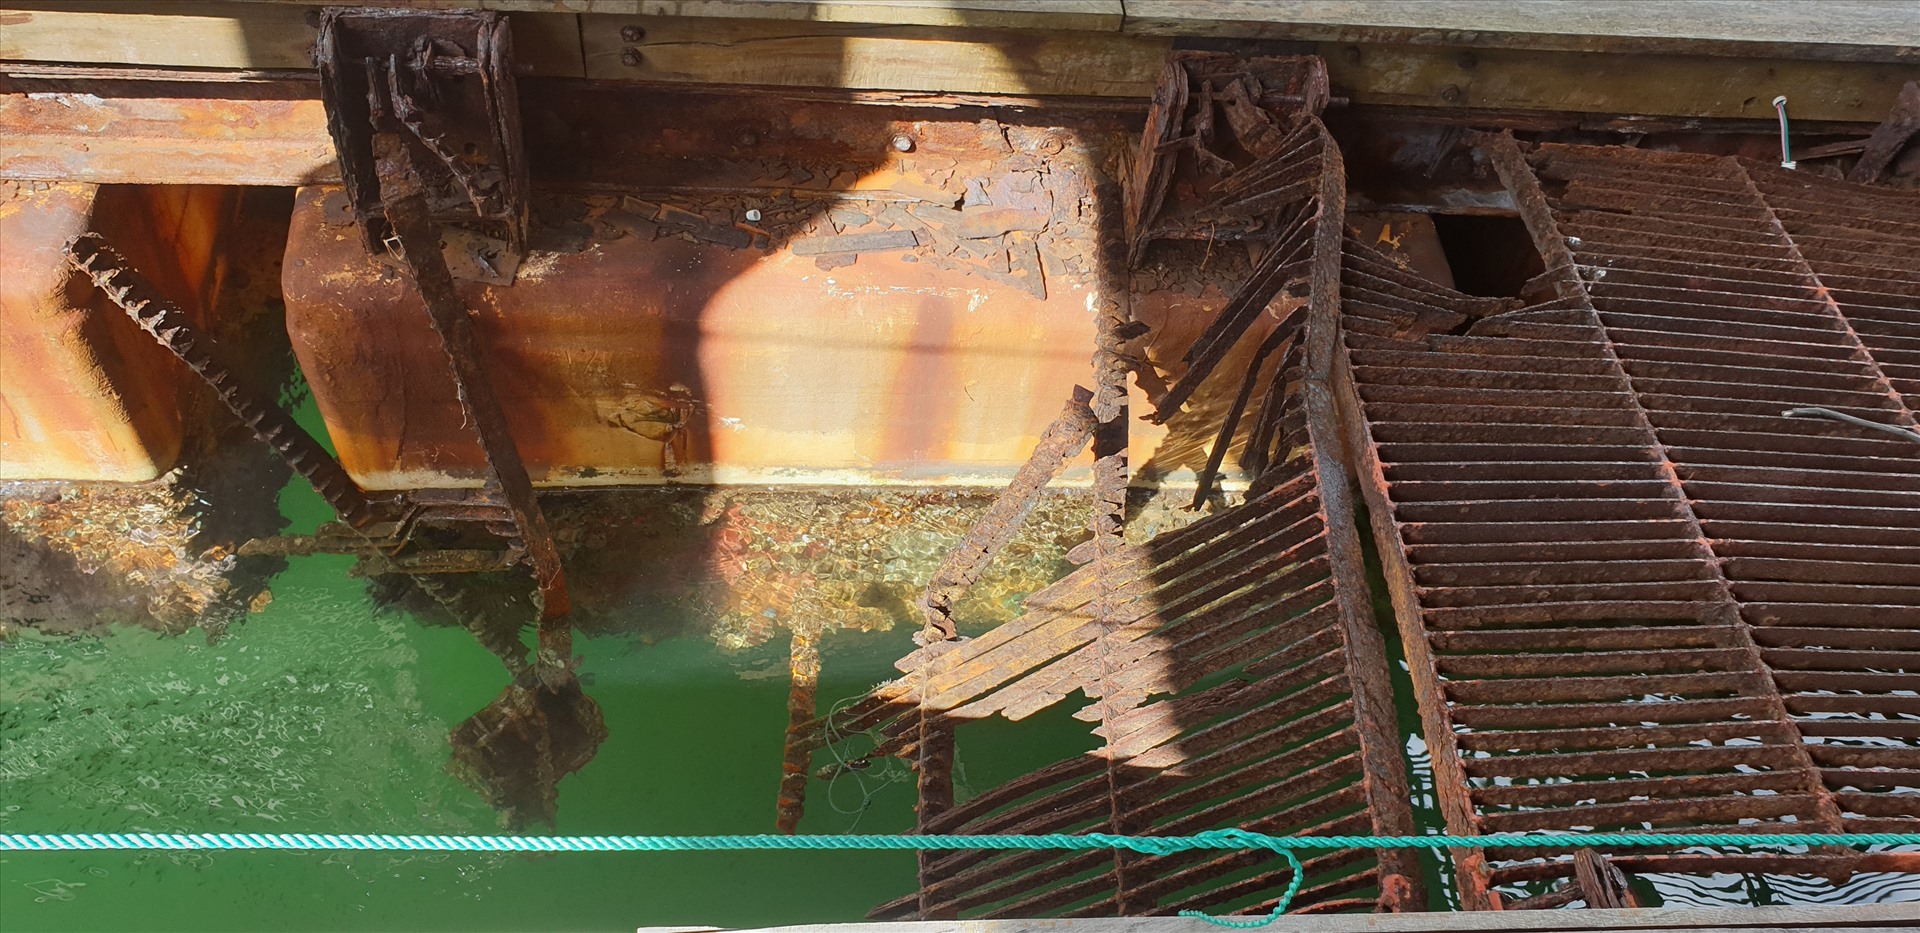 Đường dẫn dạng cầu sắt giữa các đơn nguyên bị han gỉ, dẫn đến mất an toàn và ảnh hưởng đến môi trường, cảnh quan của Di sản thiên nhiên thế giới vịnh Hạ Long. Ảnh: Nguyễn Hùng